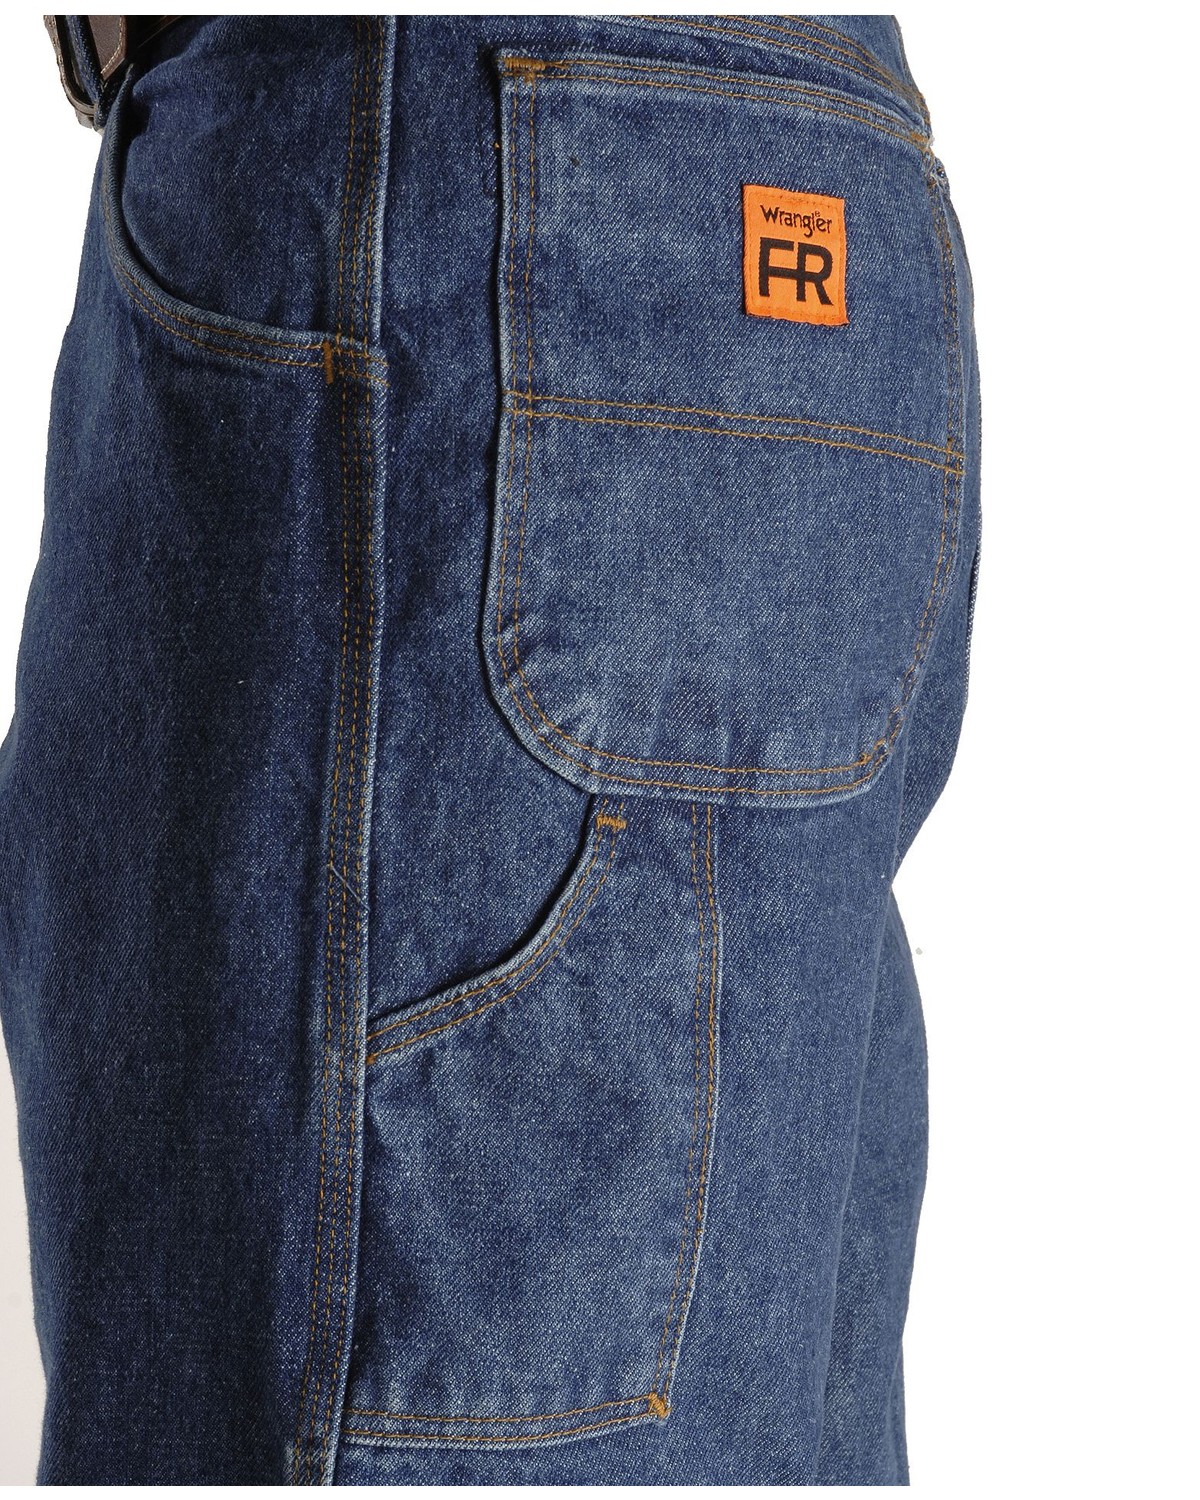 Wrangler Riggs Men's FR Carpenter Relaxed Fit Work Jeans | Sheplers